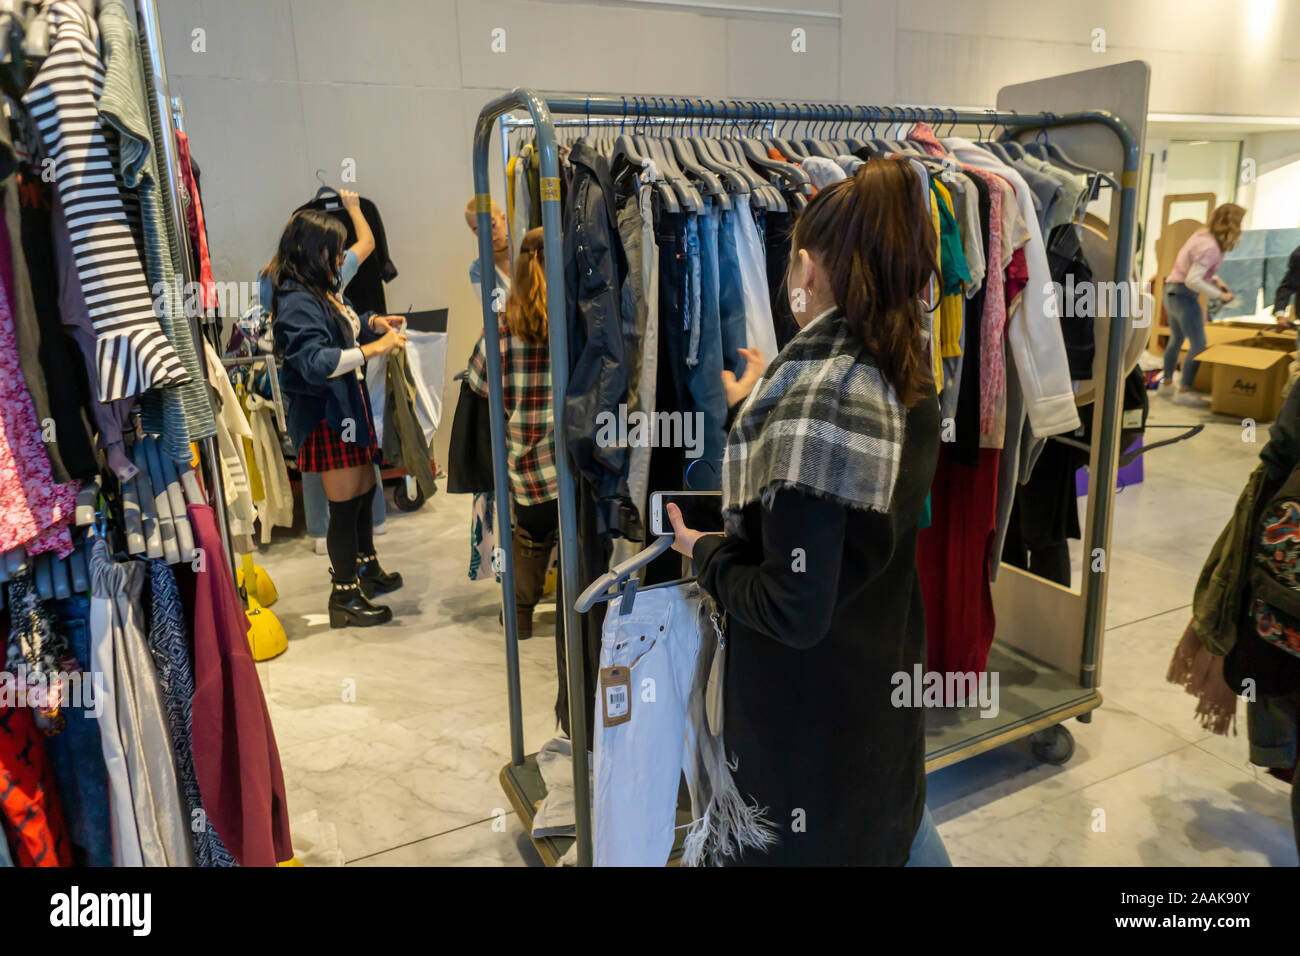 Buscar compradores de ropa de segunda mano en el "Loop" para un buen intercambio de ropa en el Fashion Institute of Technology en Nueva York miércoles, 20 de noviembre de